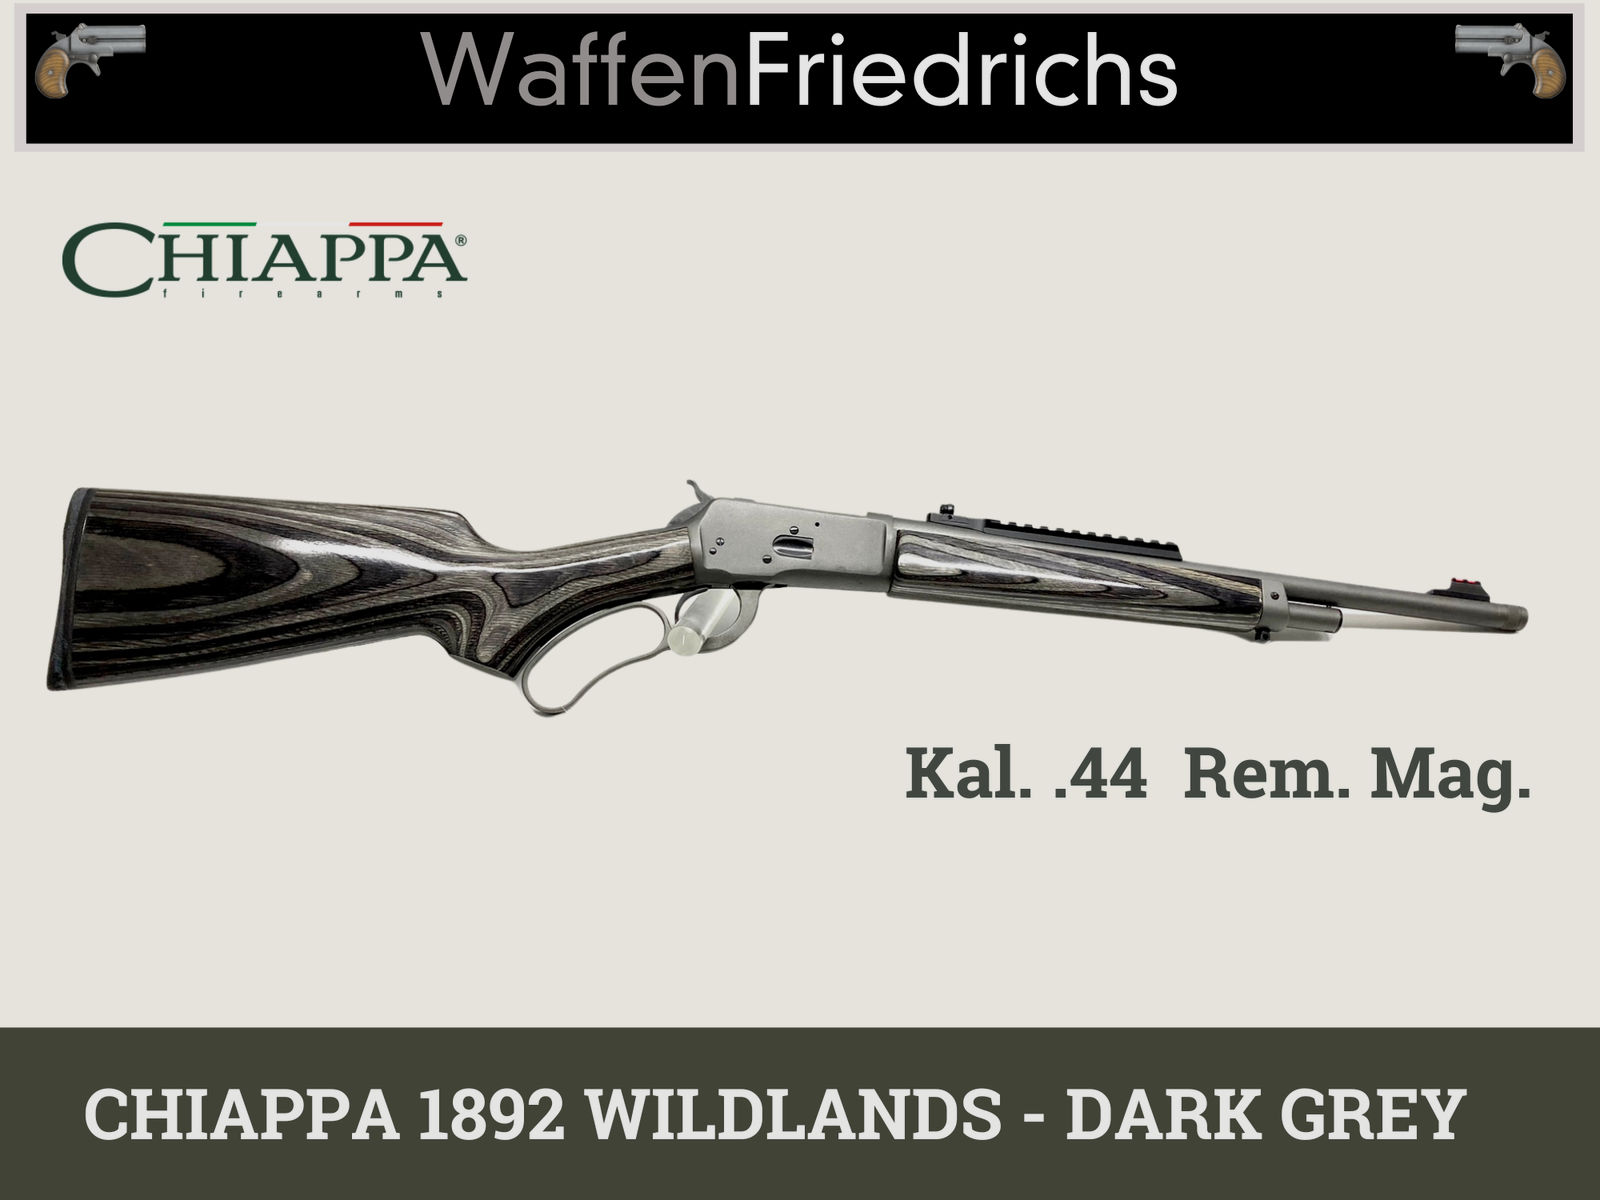 CHIAPPA 1892 WILDLANDS - DARK GREY | UHR - WaffenFriedrichs